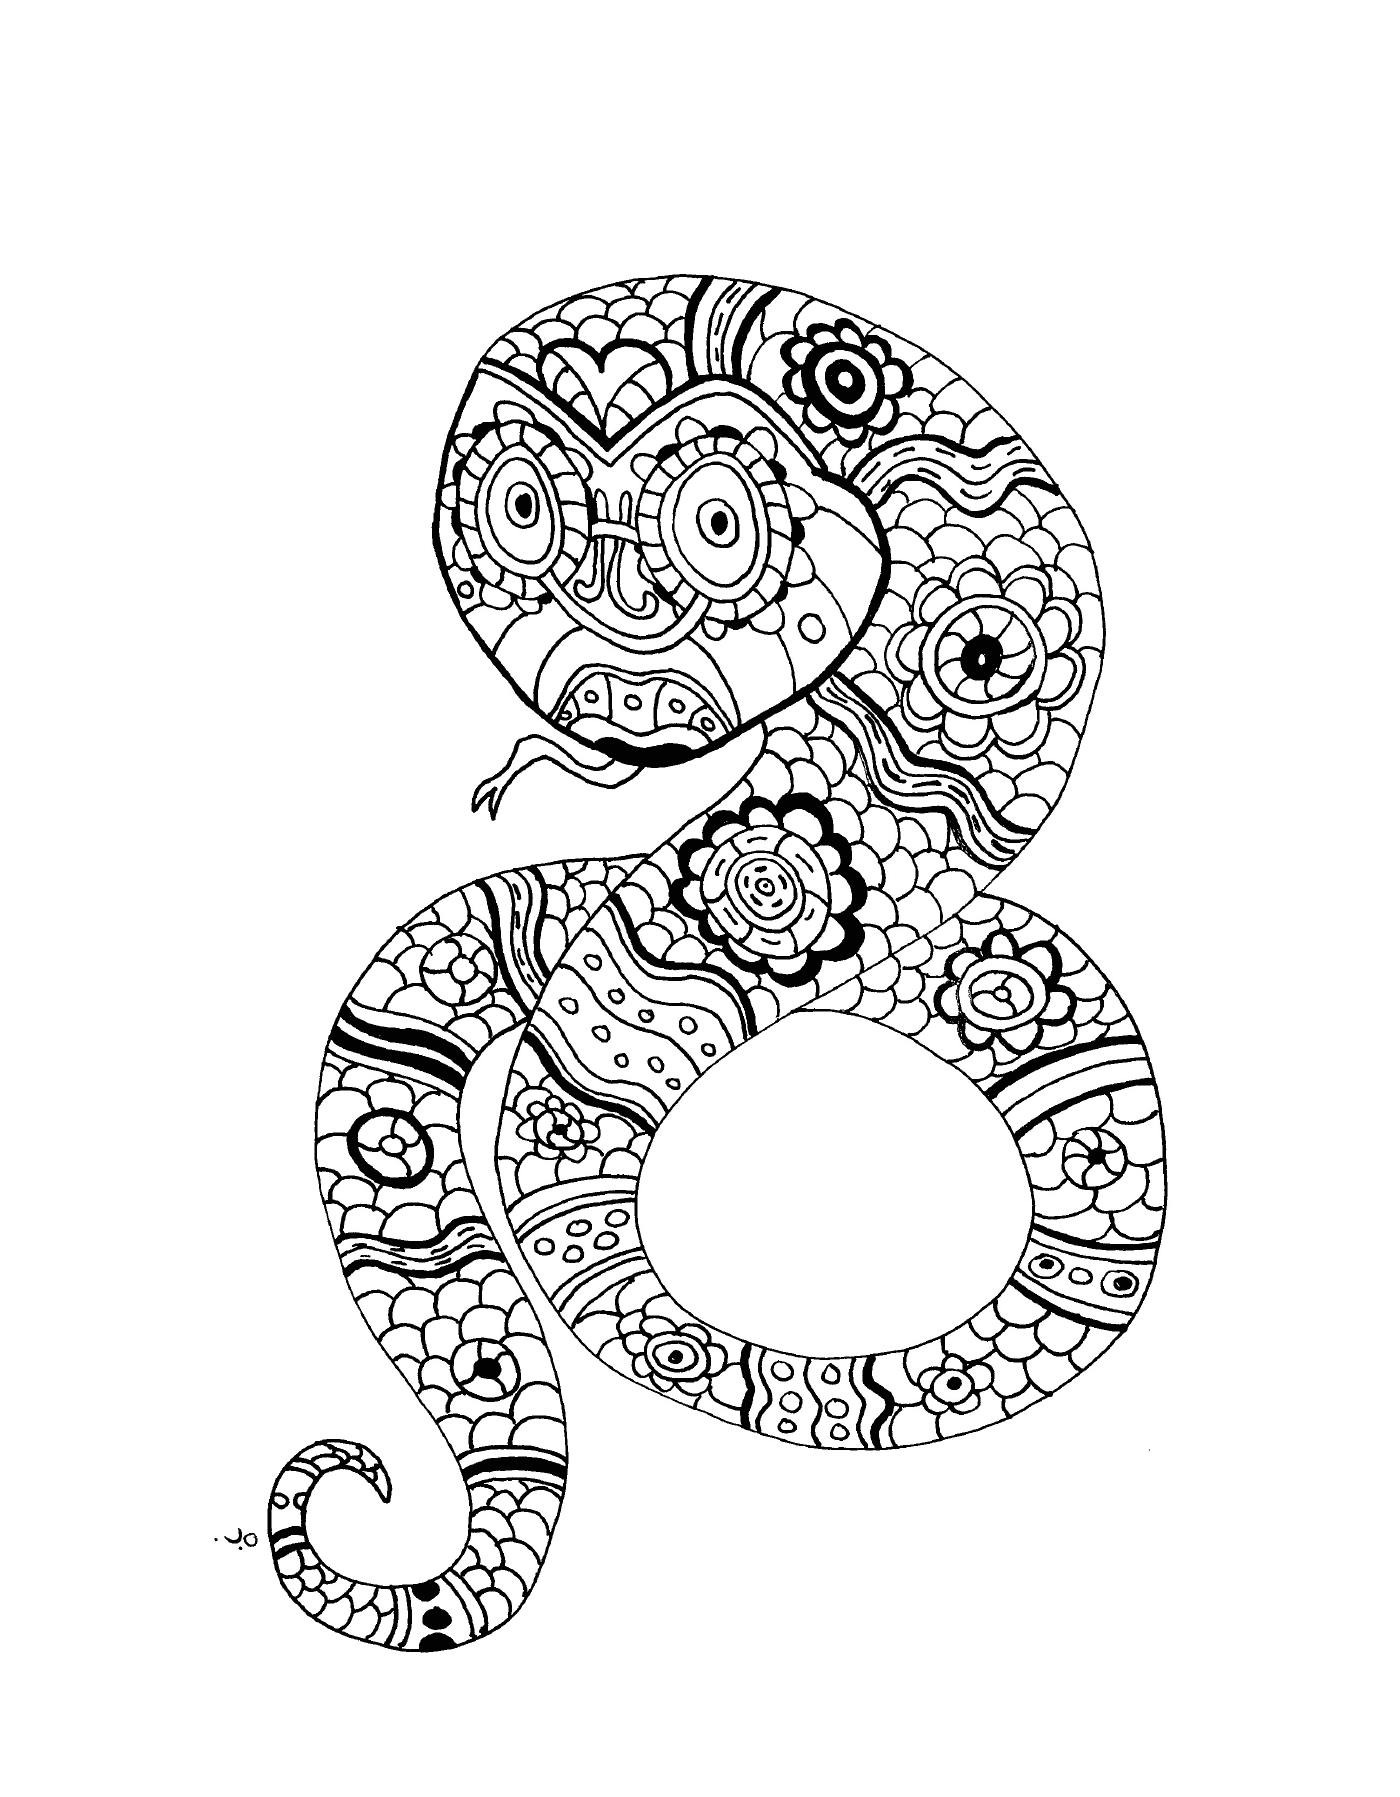   Un serpent ornemental avec un motif floral 